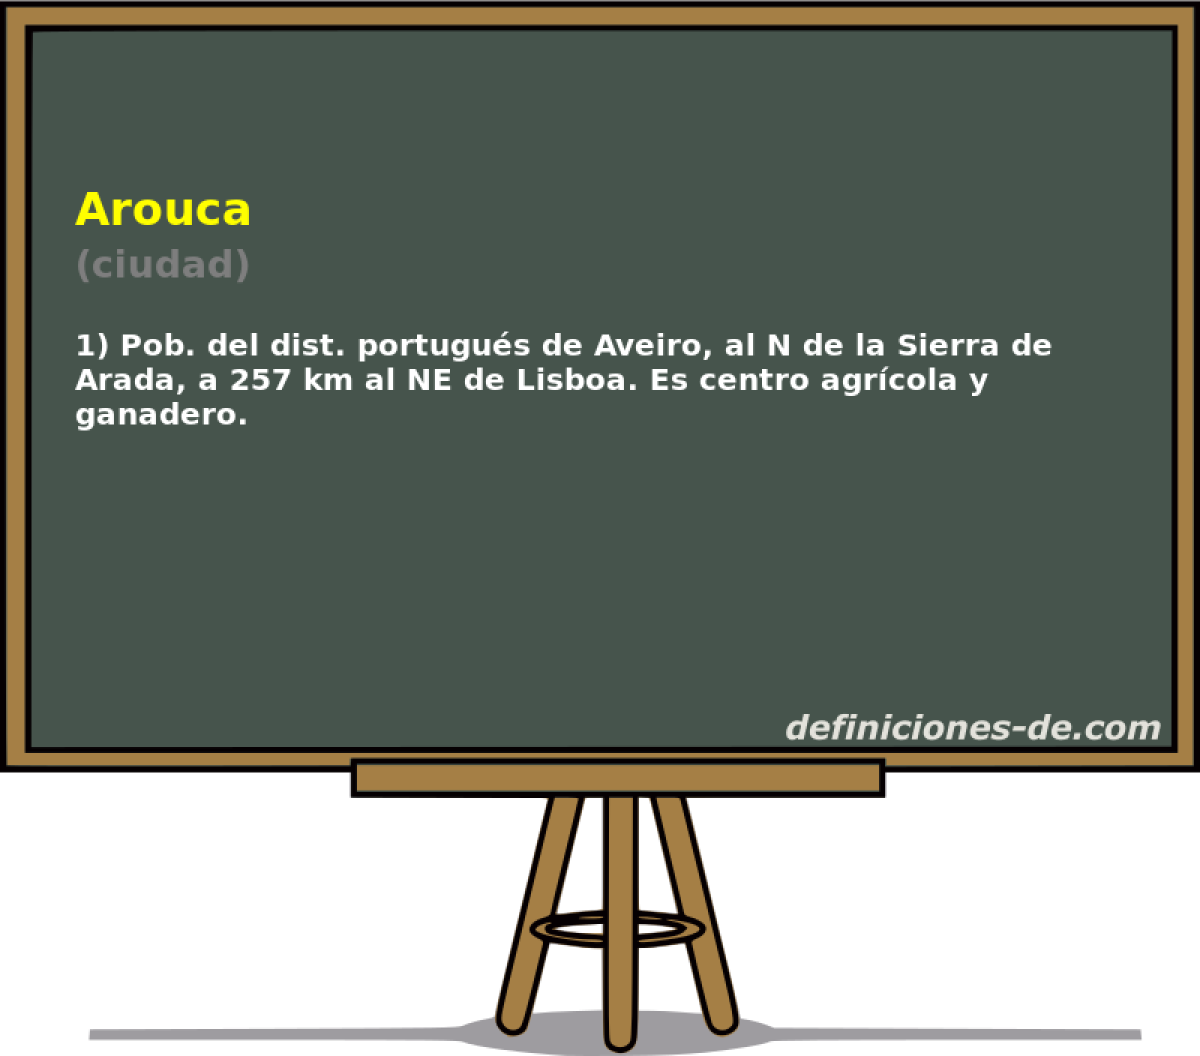 Arouca (ciudad)